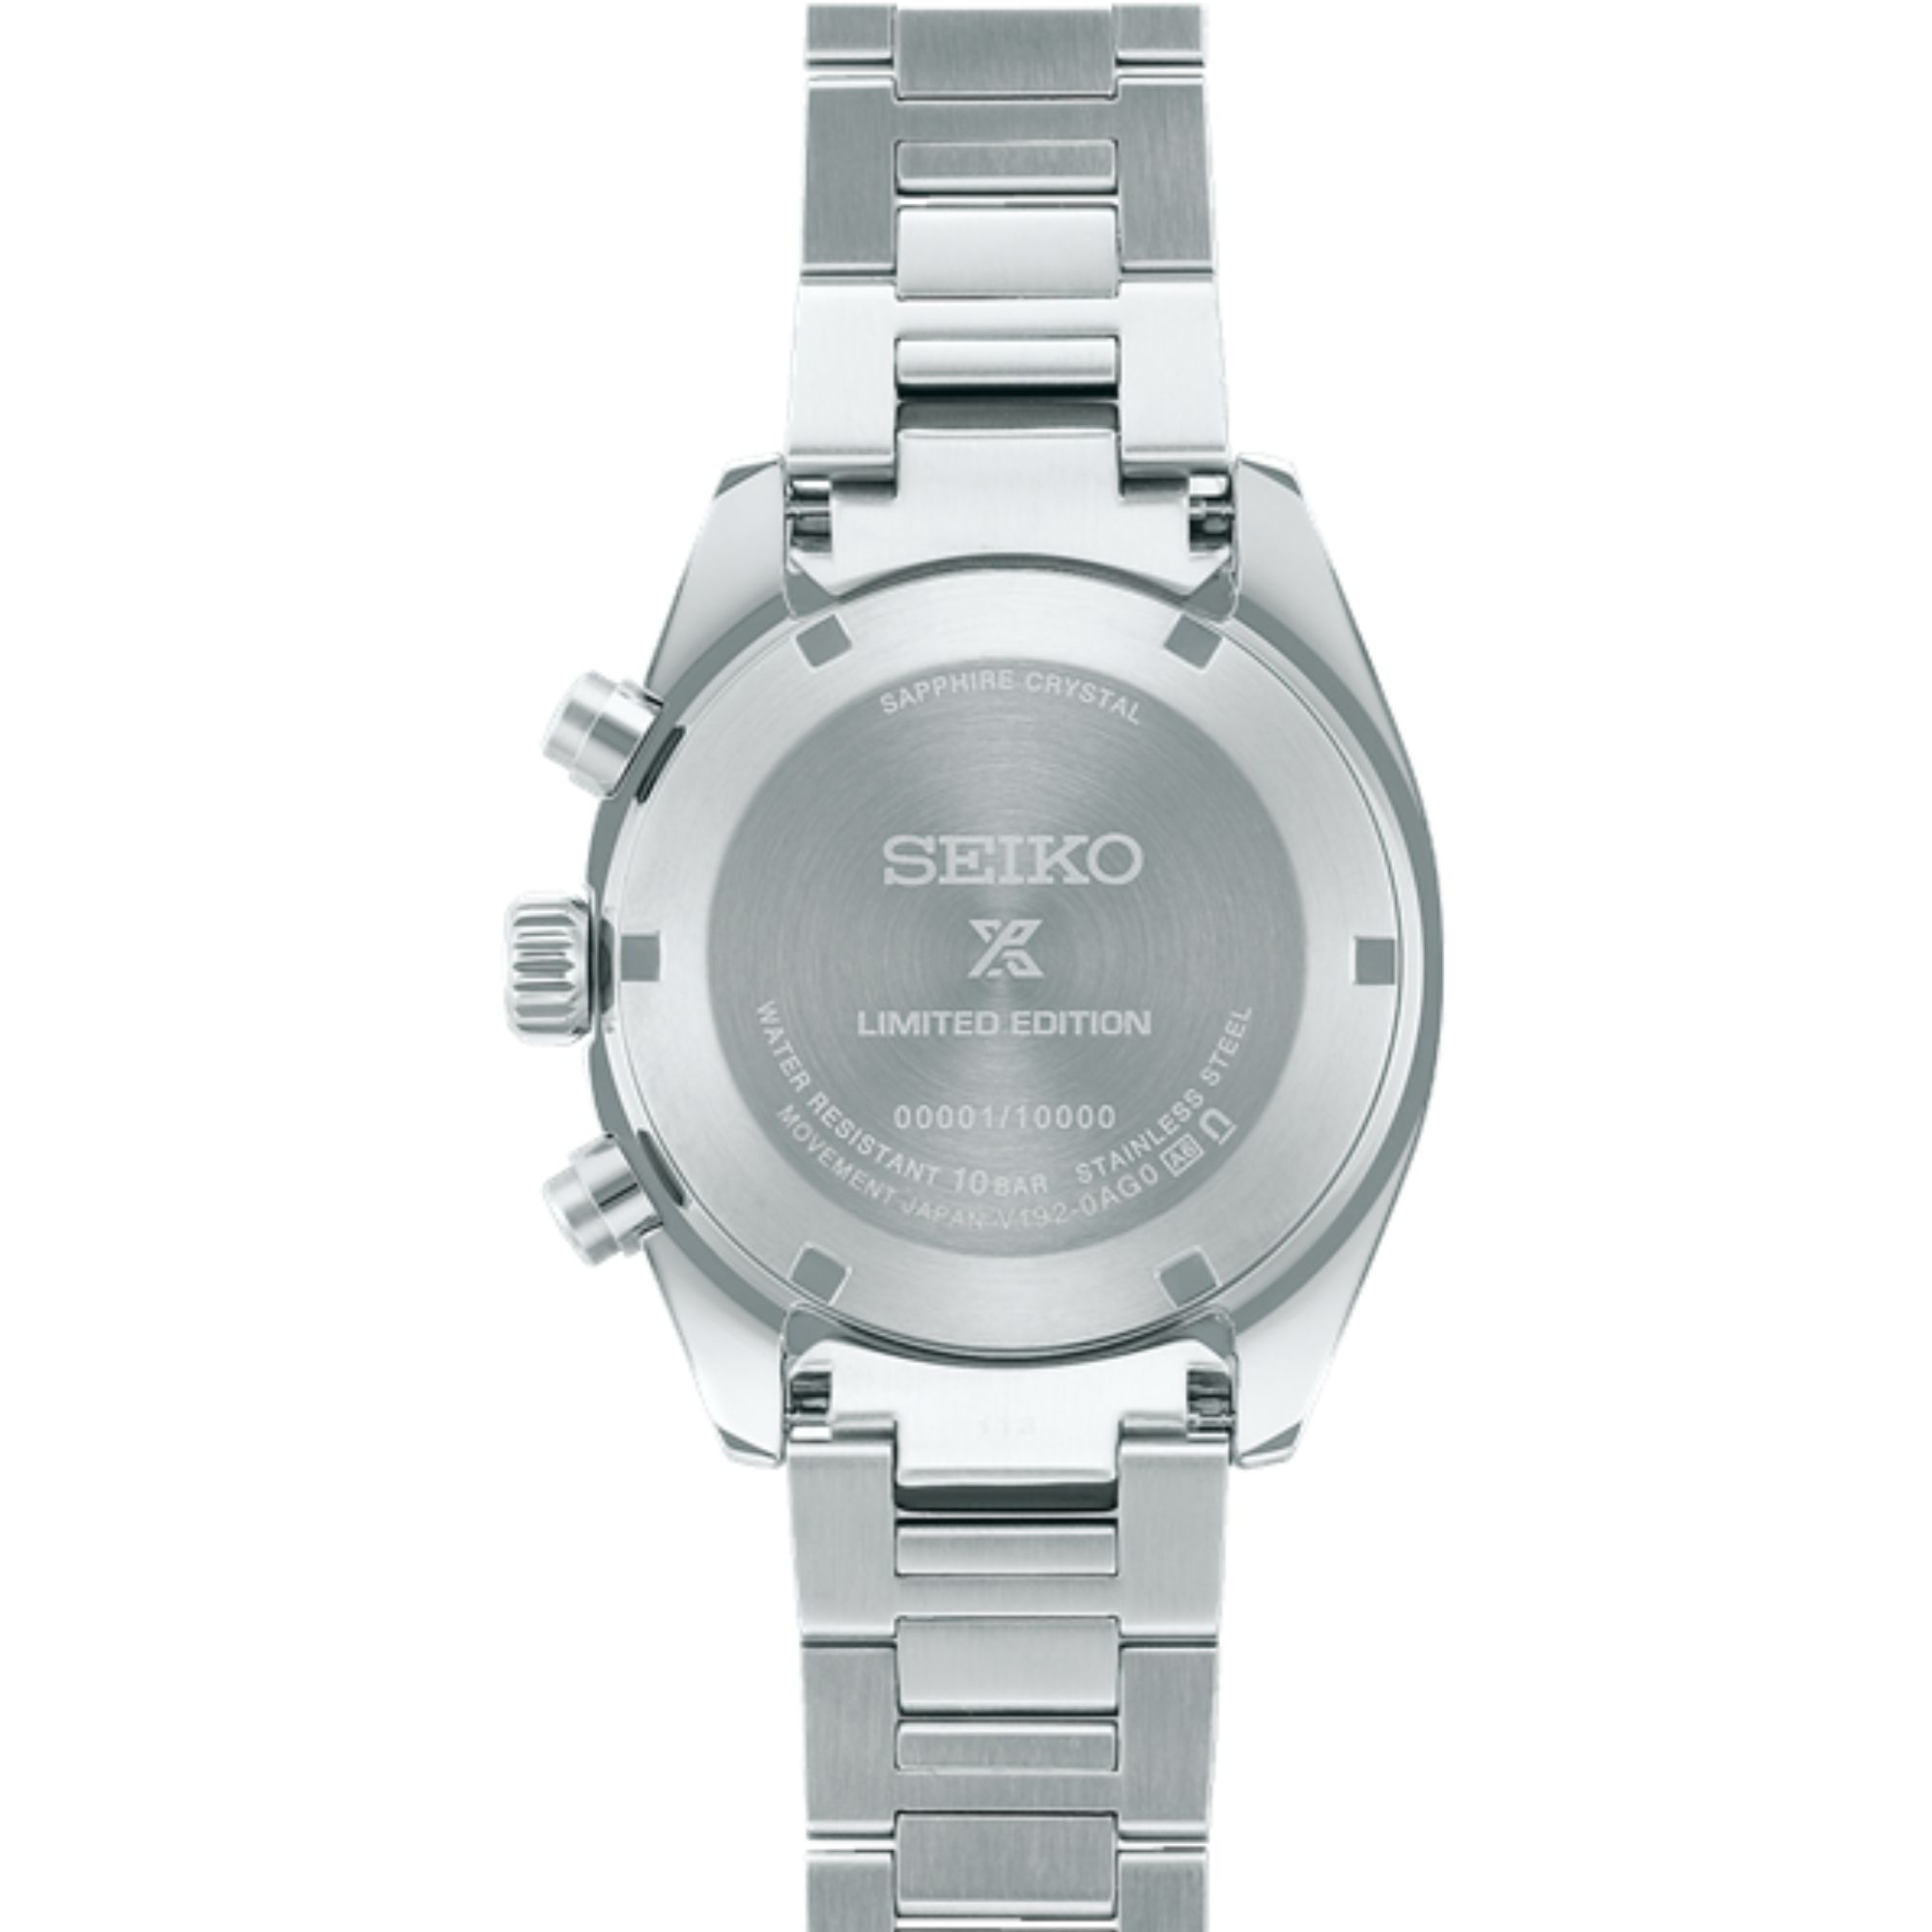 Relógio Seiko Prospex Speedtimer Solar Edição Limitada Azul SSC909